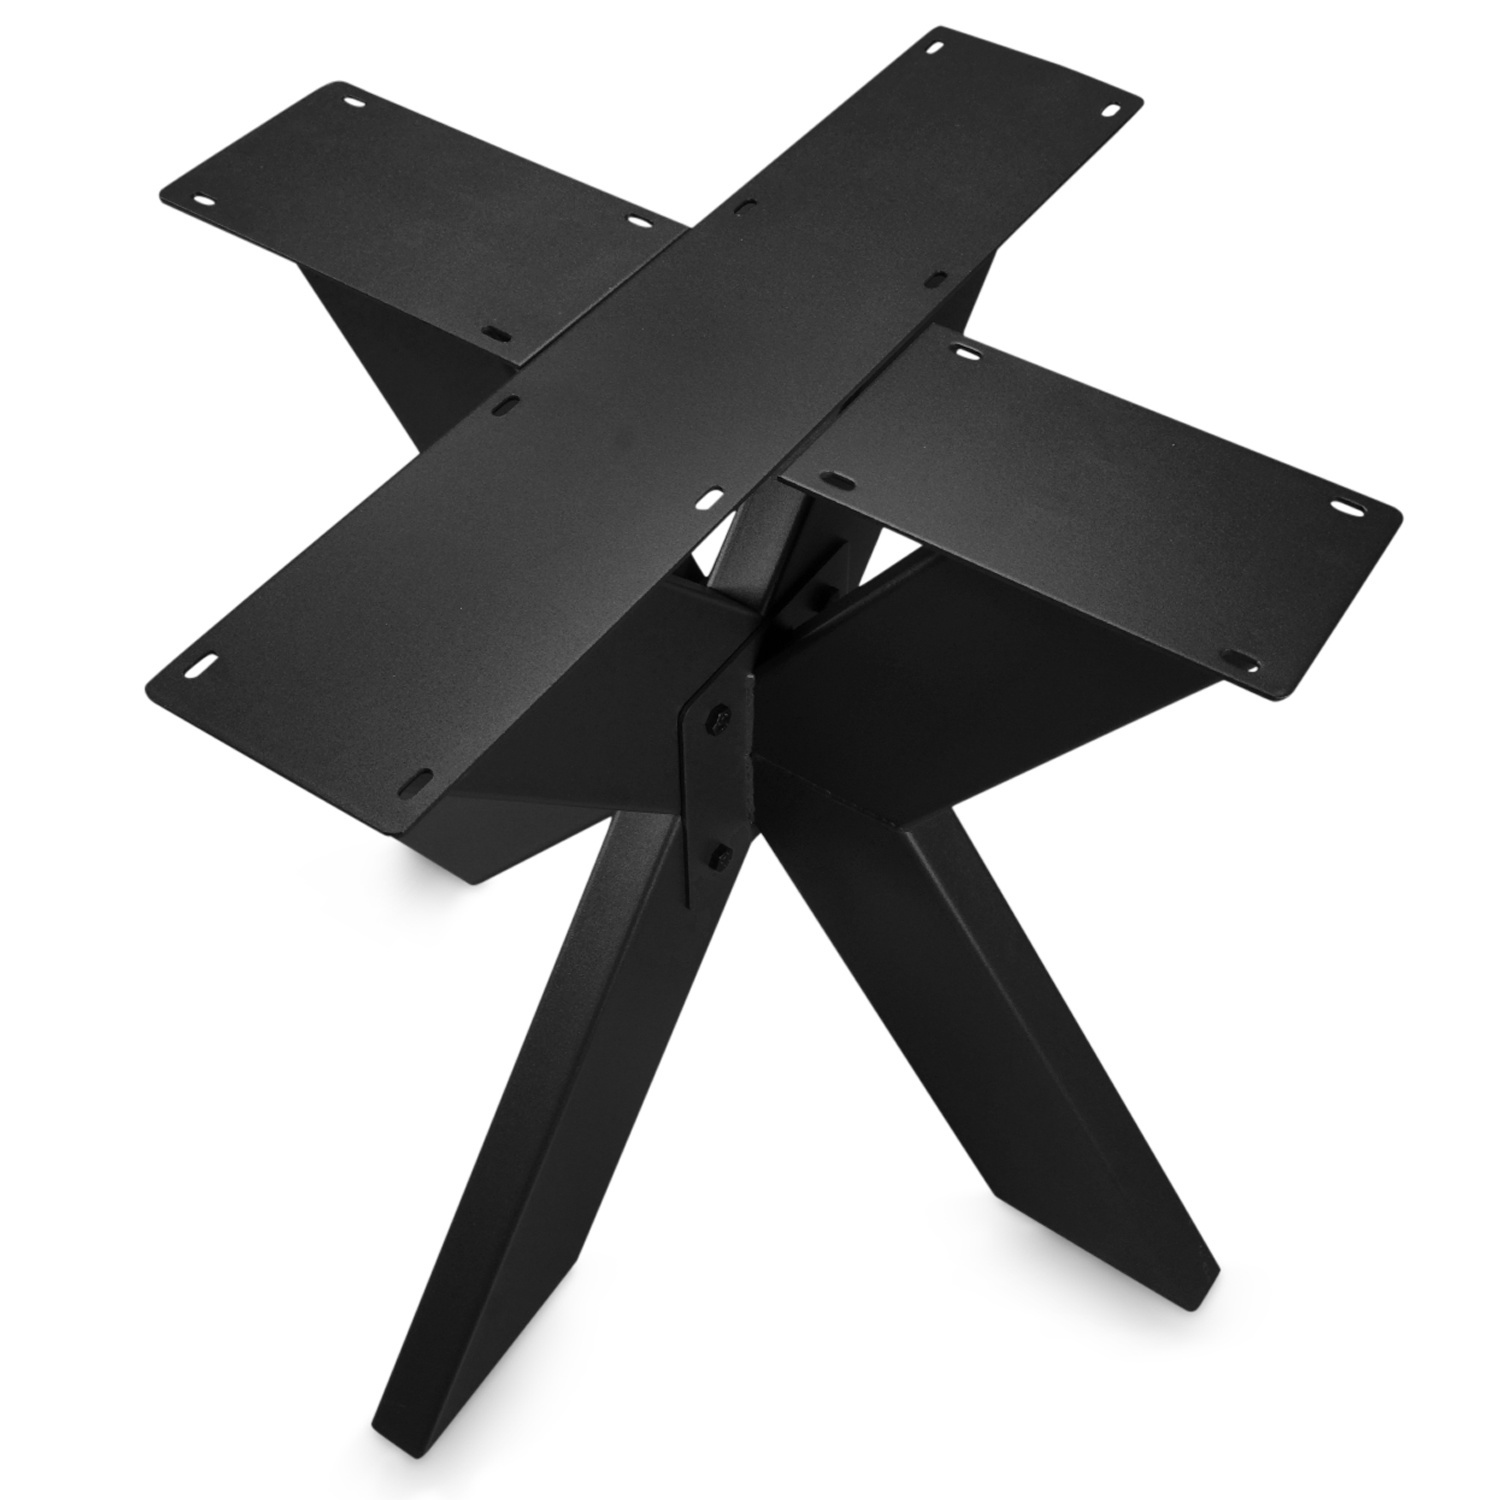  Tischgestell Metall doppelt X Elegant - 3-Teilig -5x15 cm - 90x90 cm - 72cm hoch - Stahl Tischuntergestell / Mittelfuß Rund - Schwarz Beschichtet